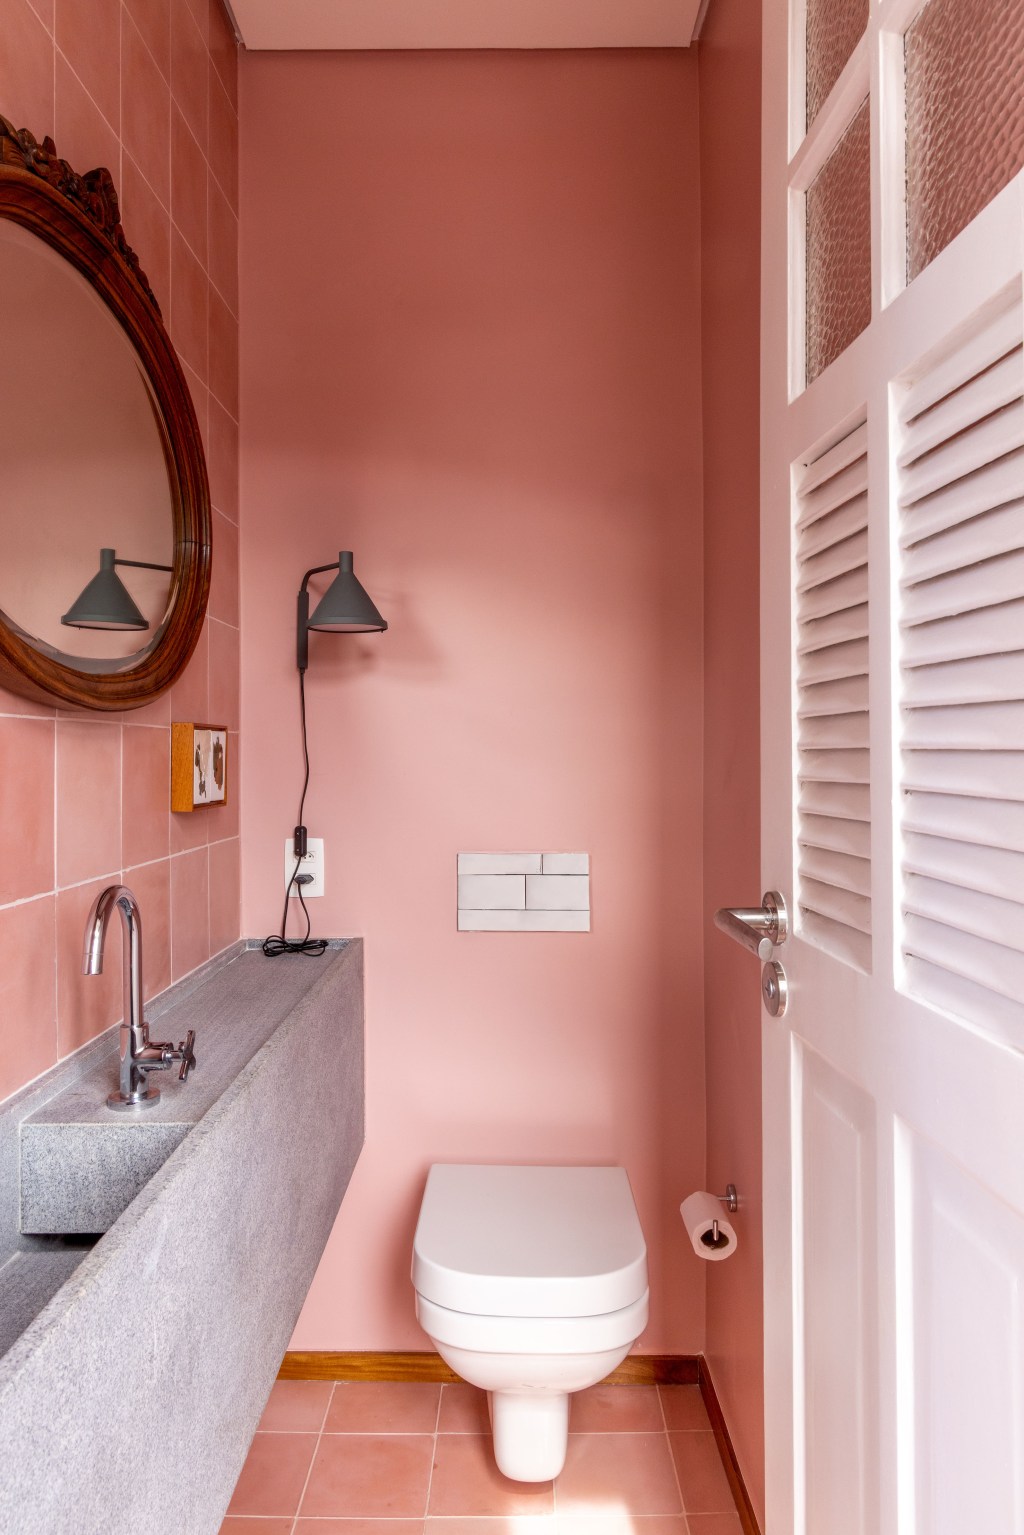 Apê de 90 m² ganha cara de casa com revestimentos charmosos e cores. Projeto Ana Neri. Na foto, lavabo com parede rosa e espelho redondo.